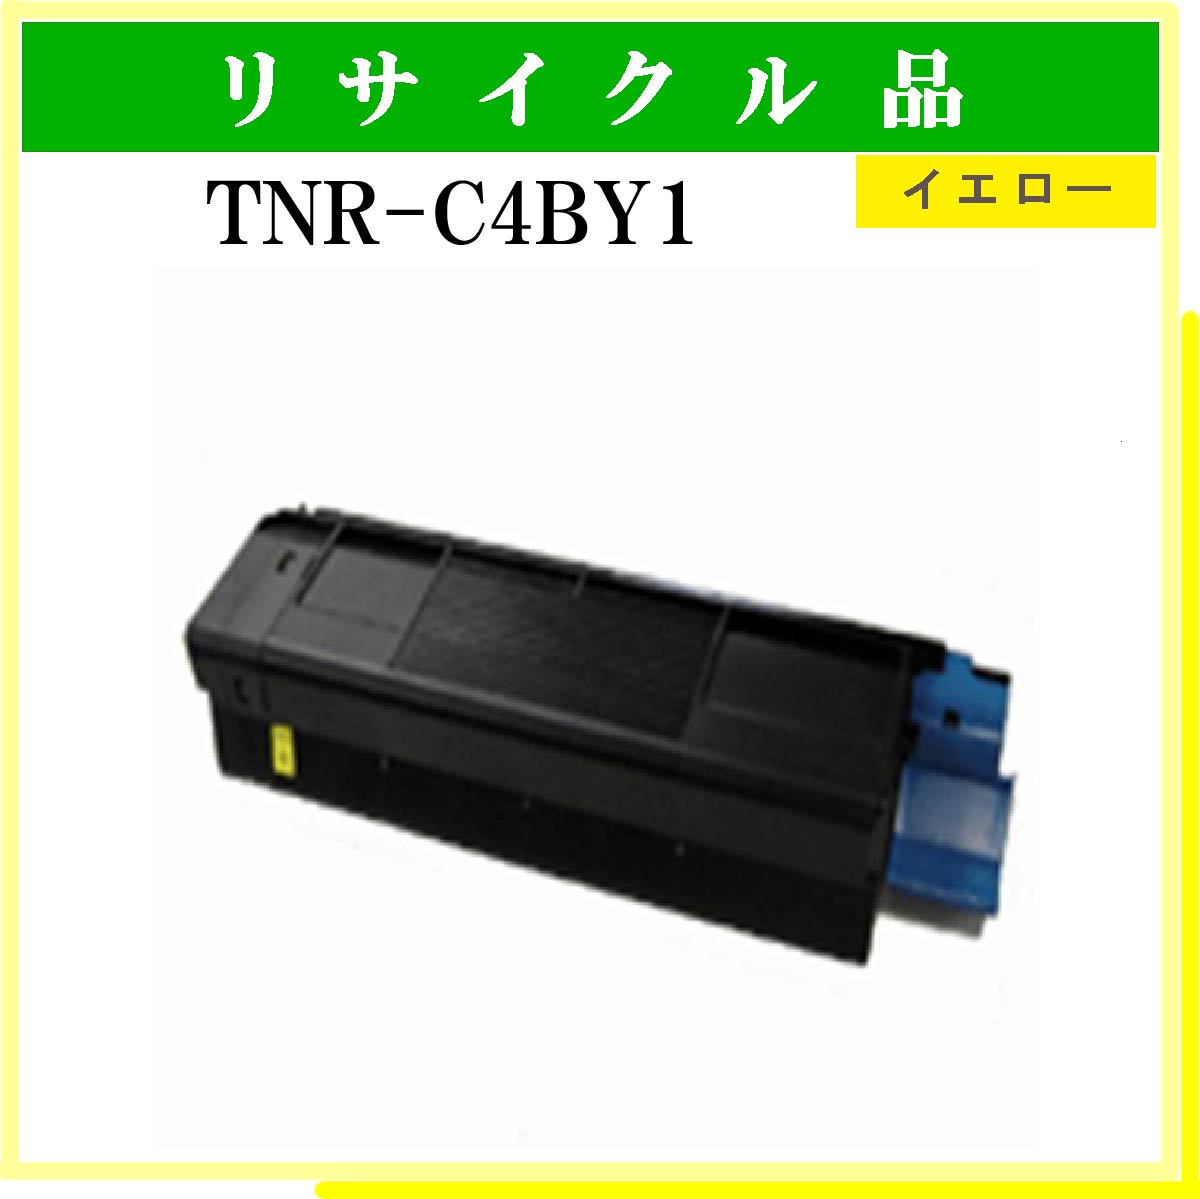 TNR-C4BY1